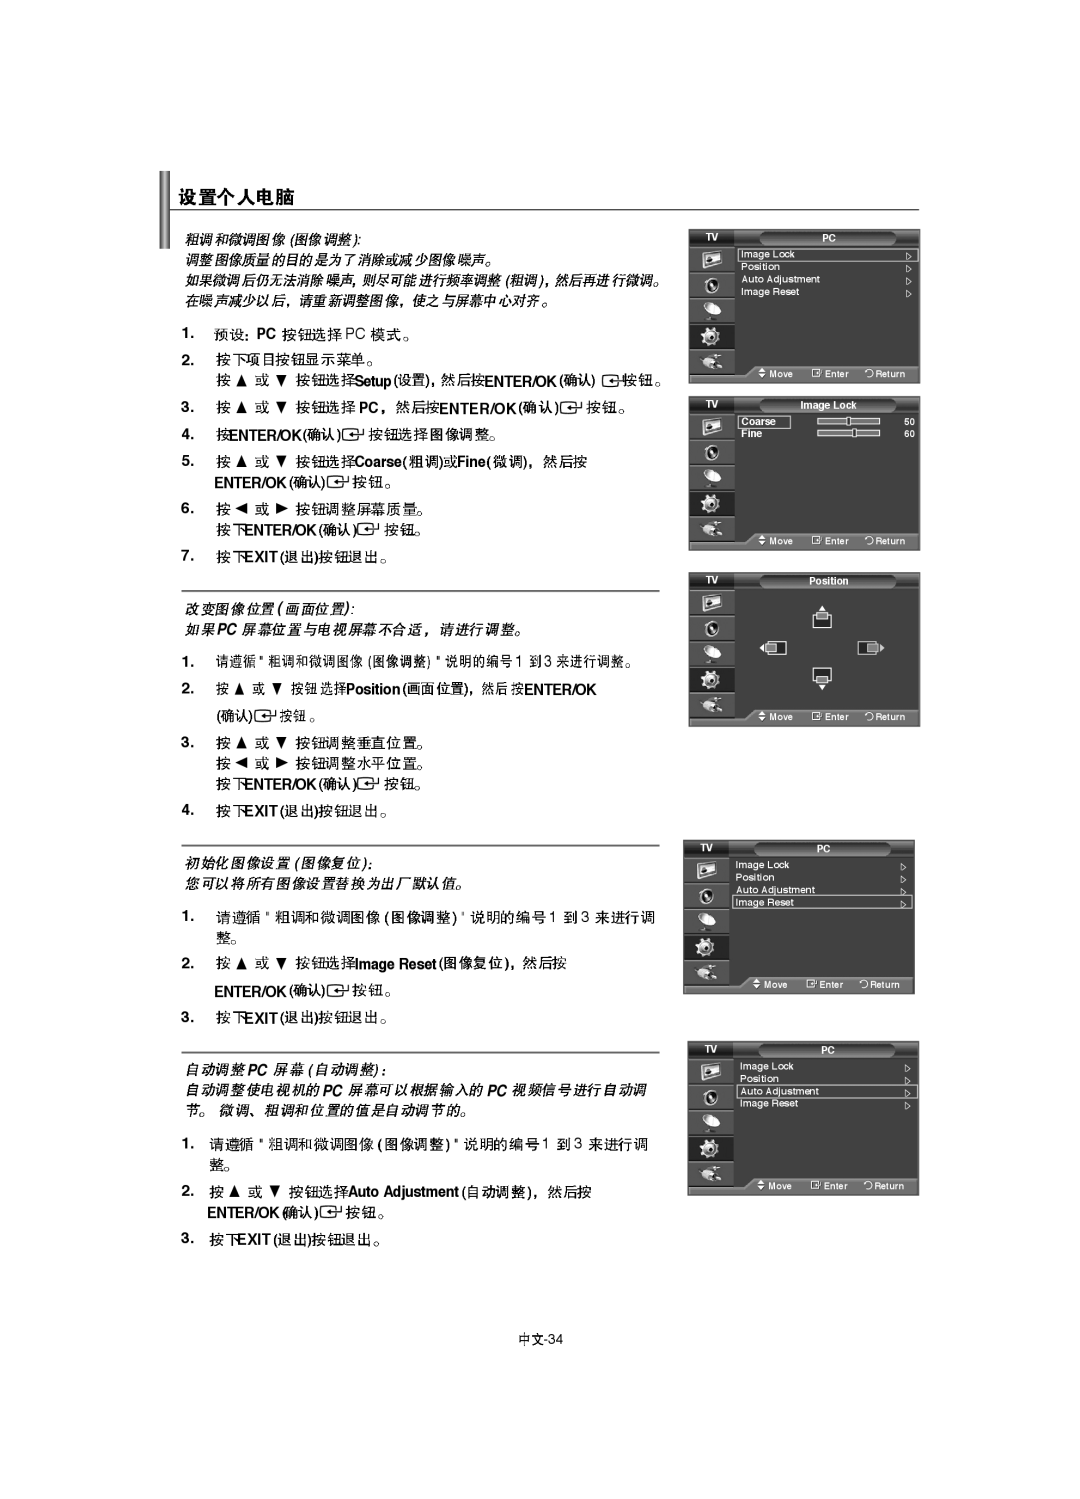 Samsung LA52F8 SetupENTER/OK 3. PCENTER/OK 4.ENTER/OK 5.CoarseFine ENTER/OK, ENTER/OK 7. EXIT, Position, ENTER/OK 4. EXIT 